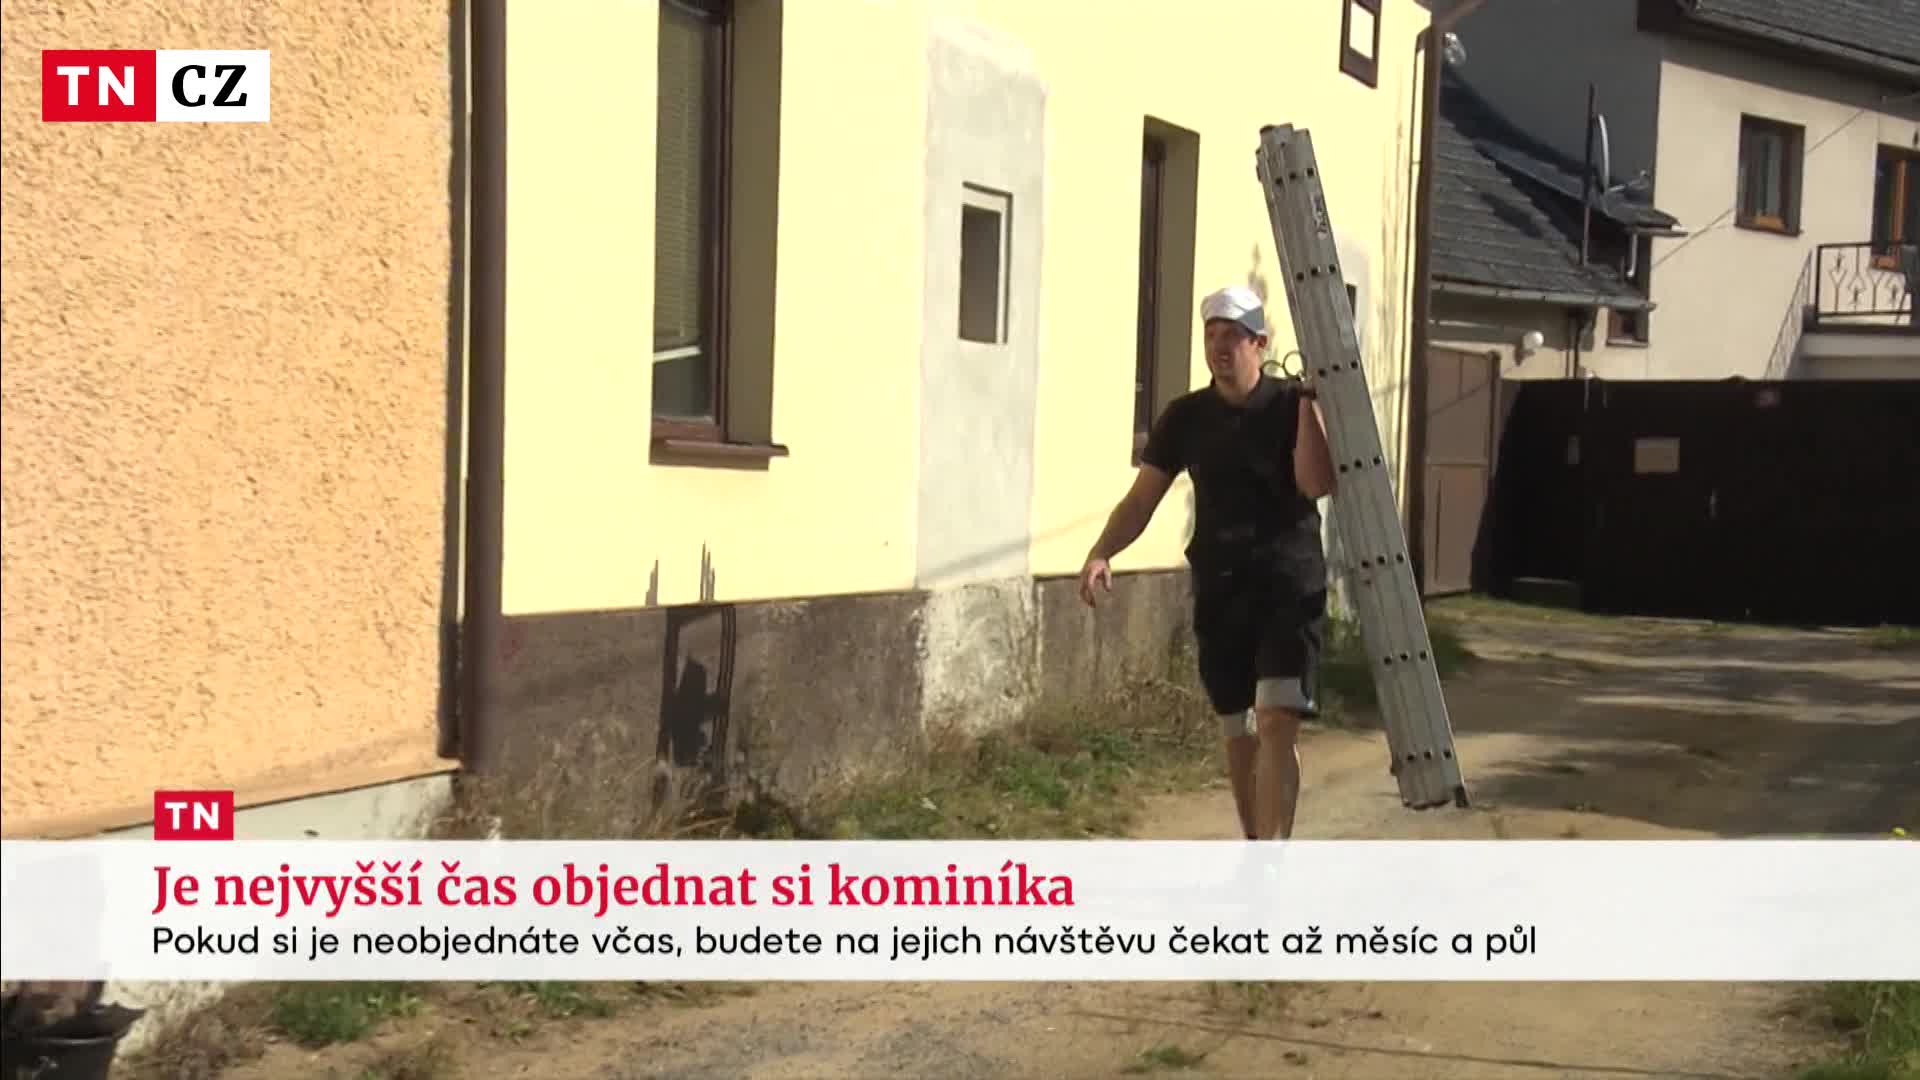 Česku chybí kominíci. Na jejich návštěvu se čeká i měsíc a půl